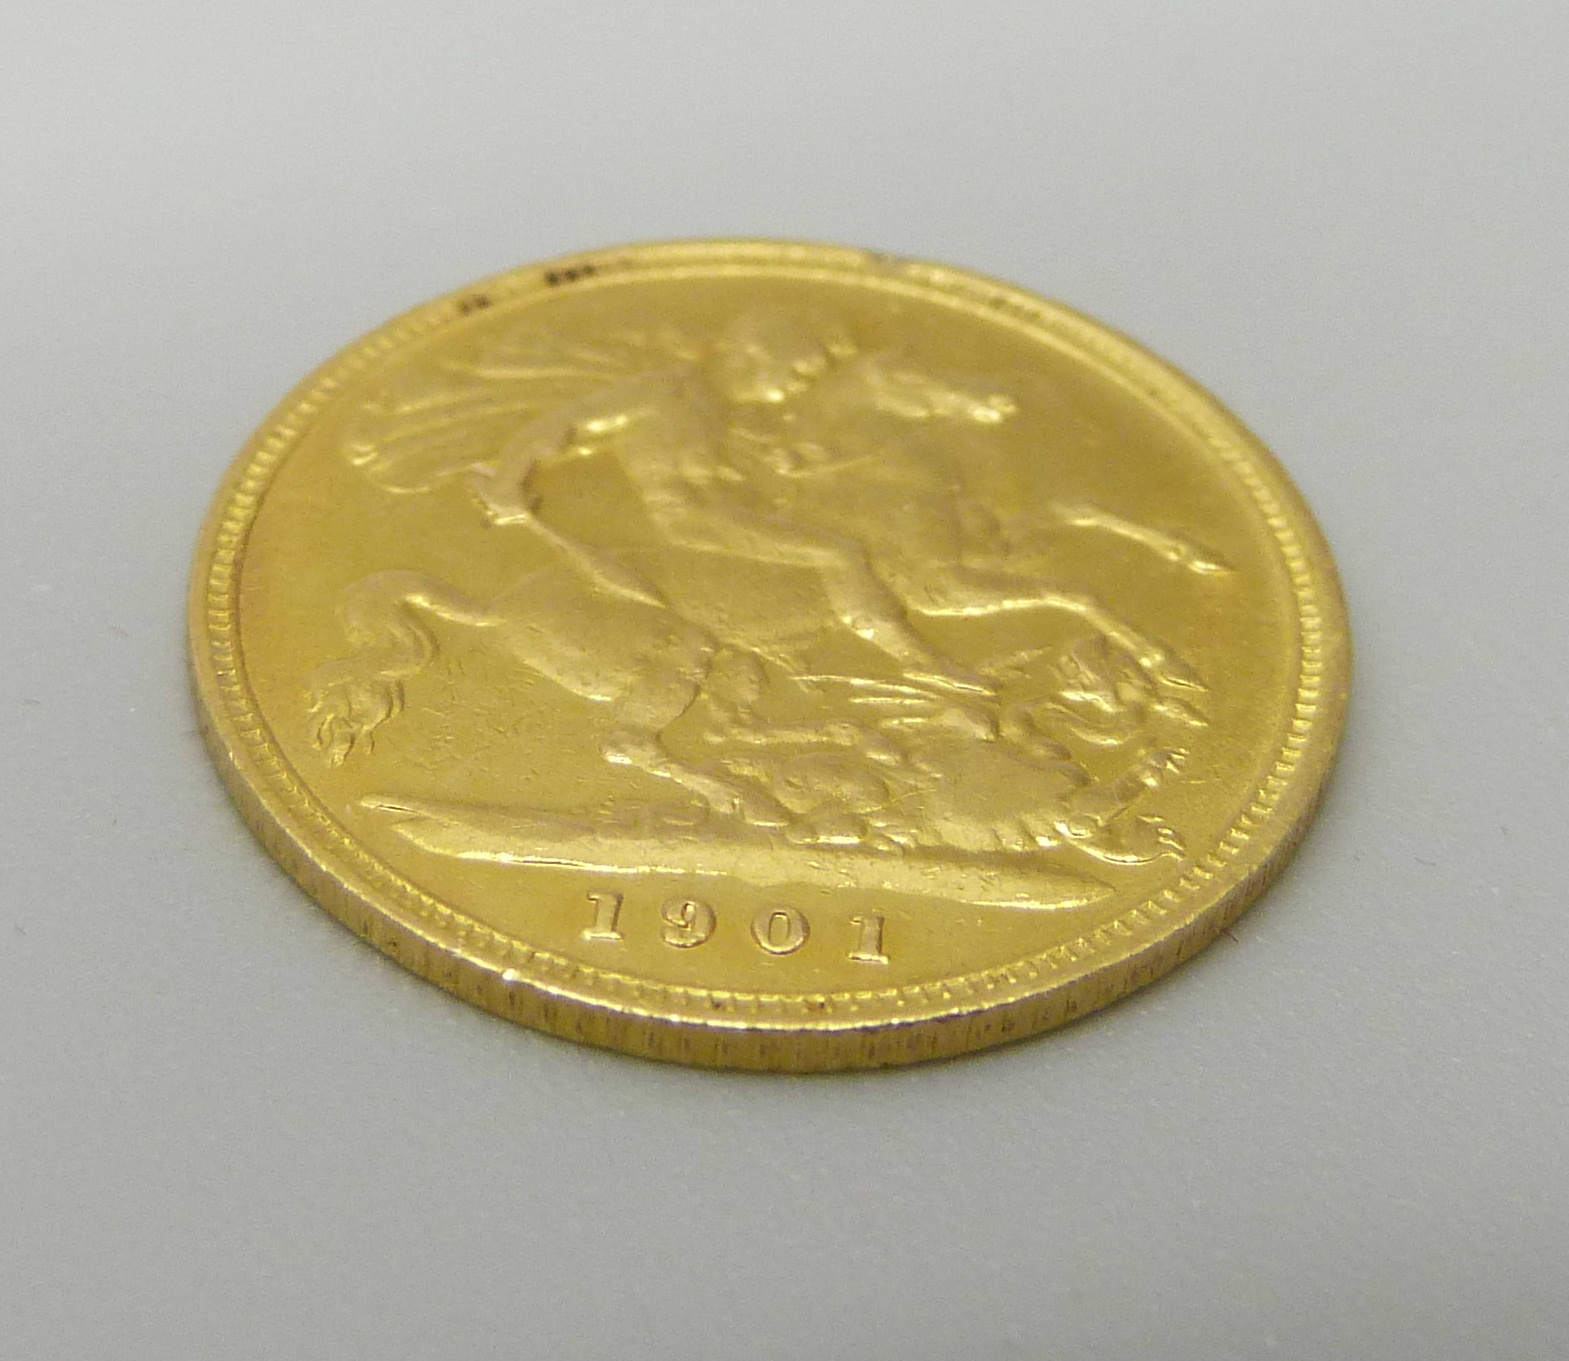 A 1901 gold half sovereign